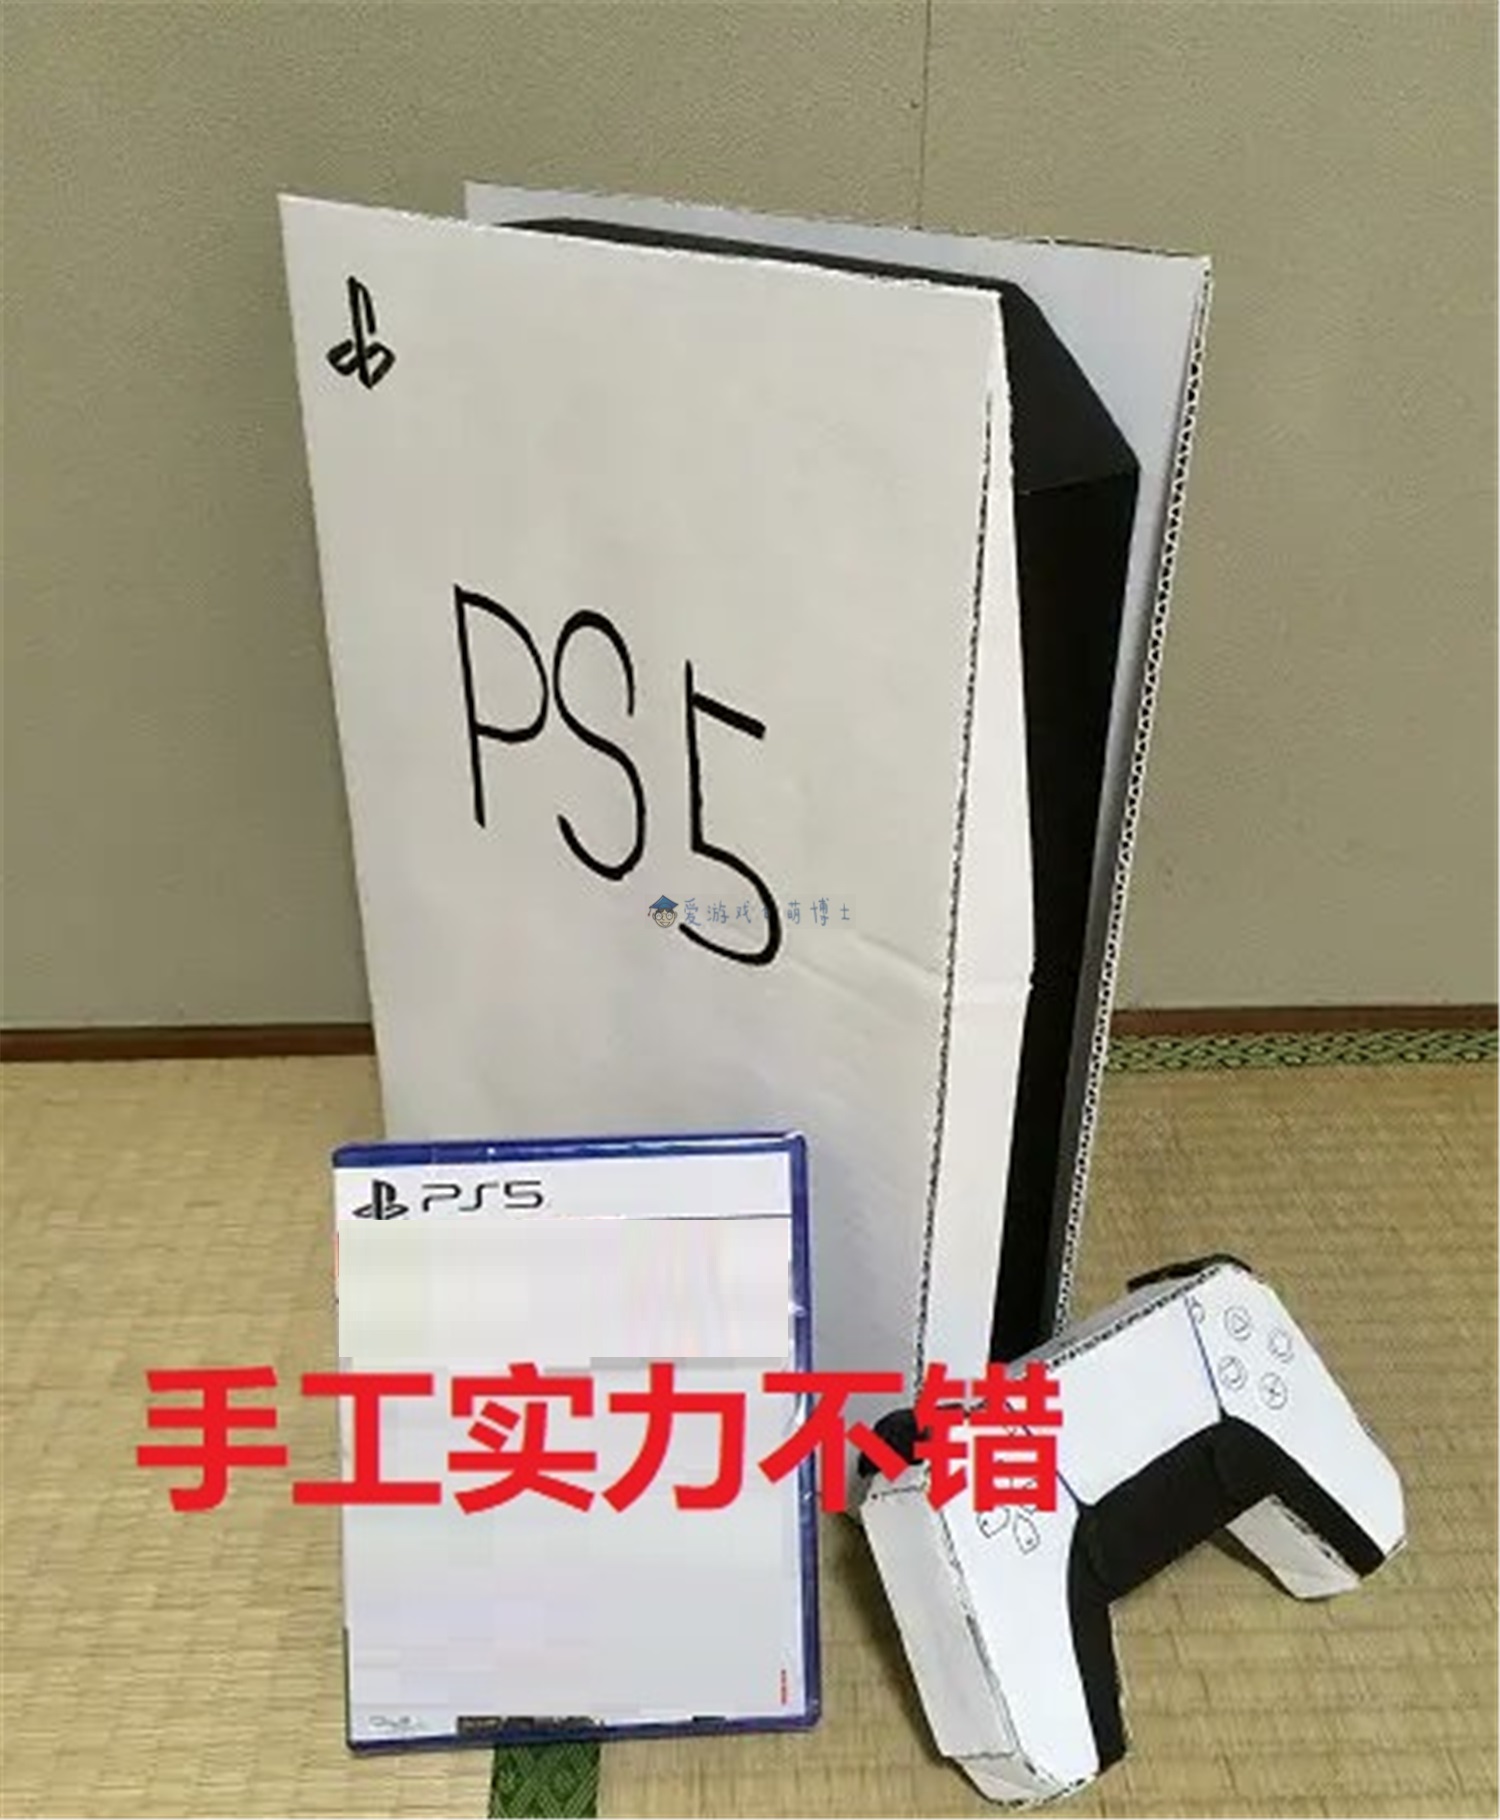 日本玩家自制纸质ps5游戏机用来望梅止渴如今终于得偿所愿